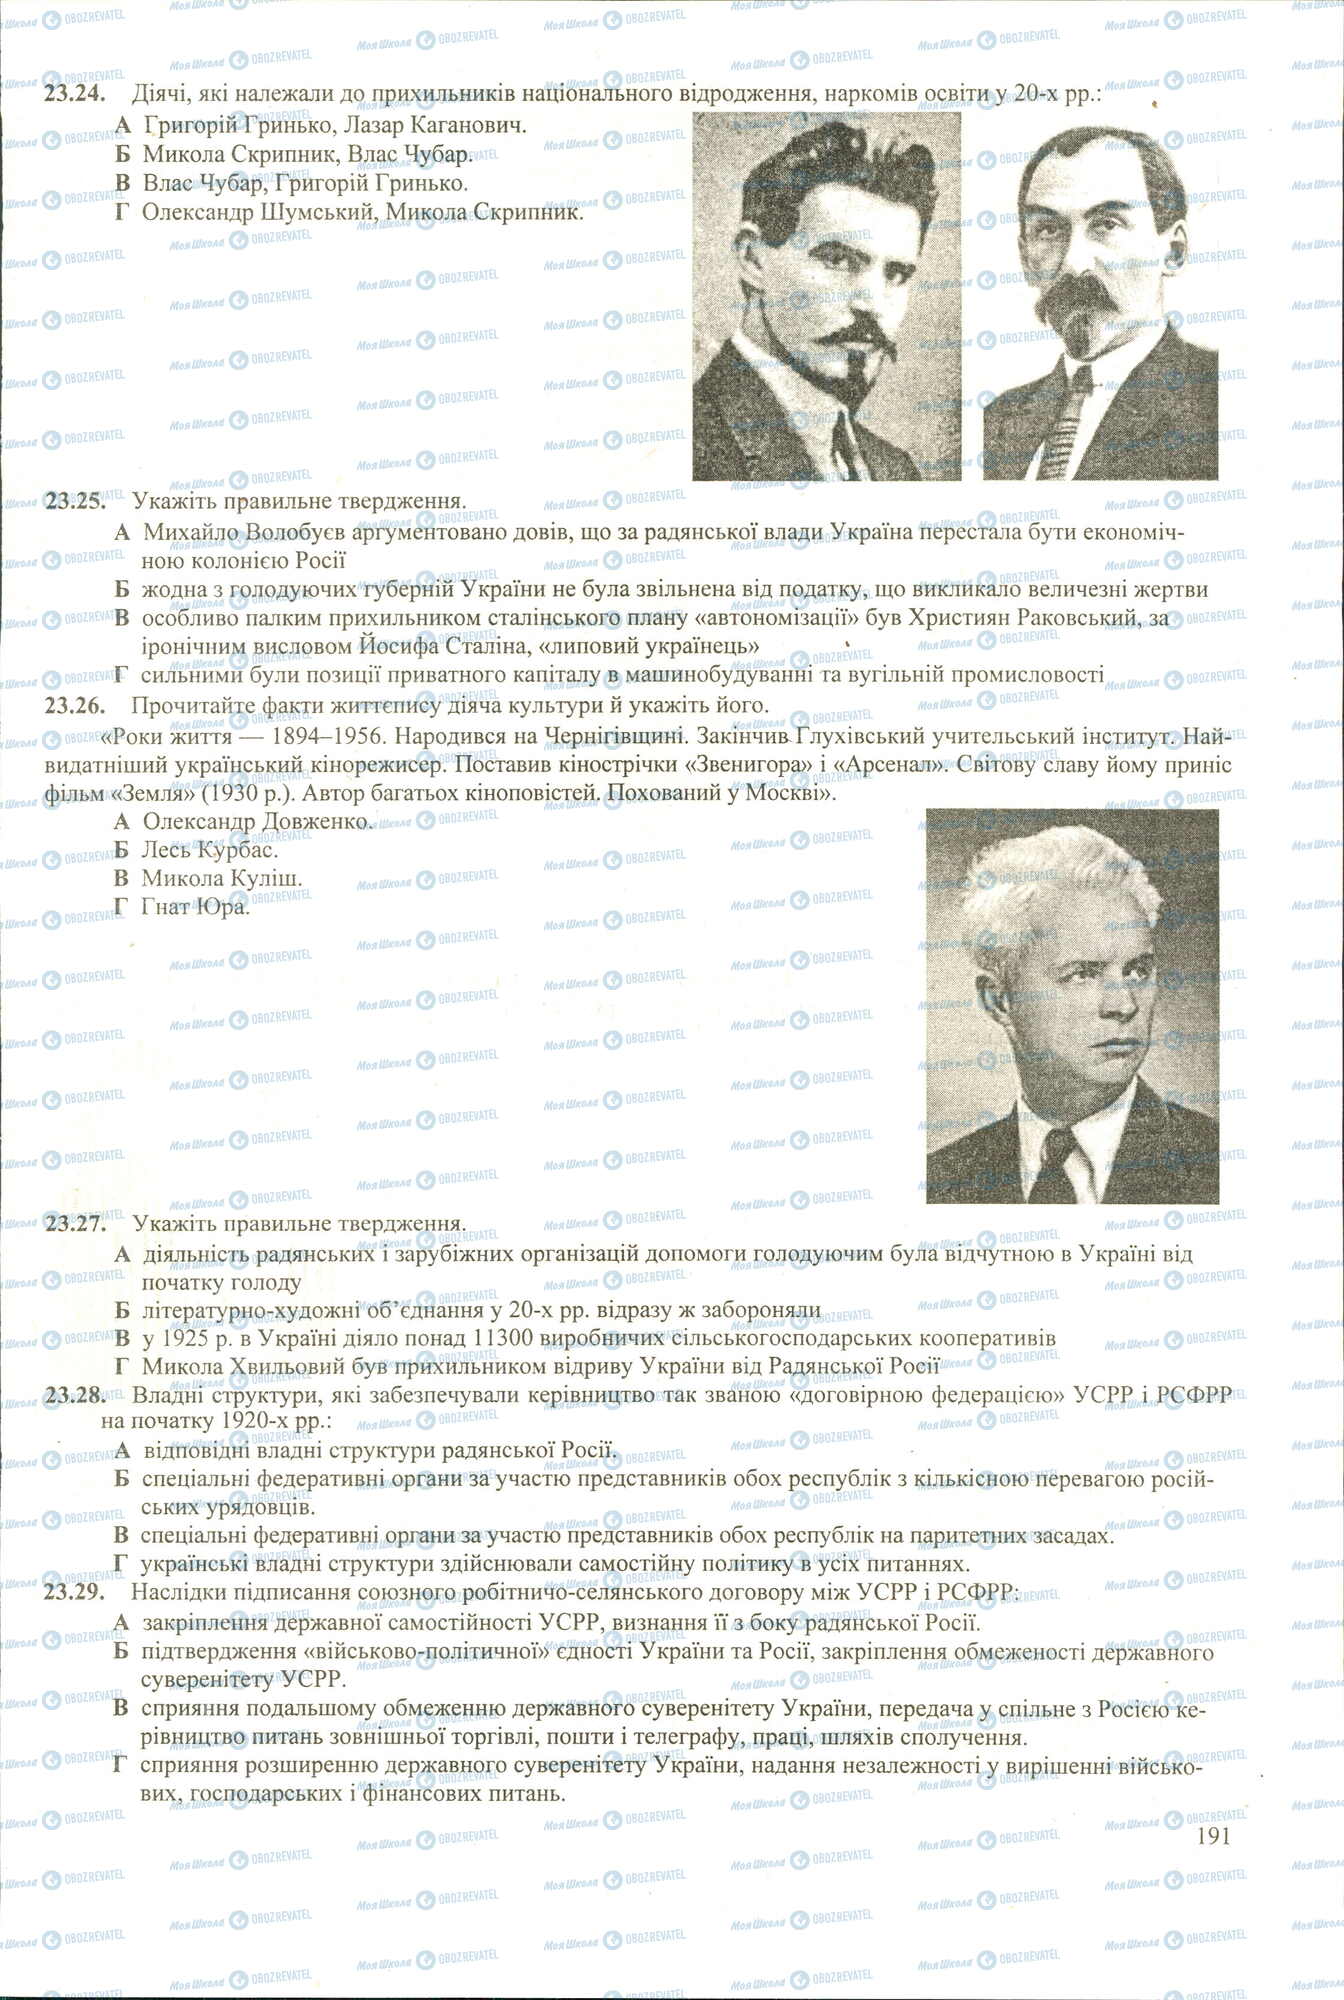 ЗНО История Украины 11 класс страница 24-29